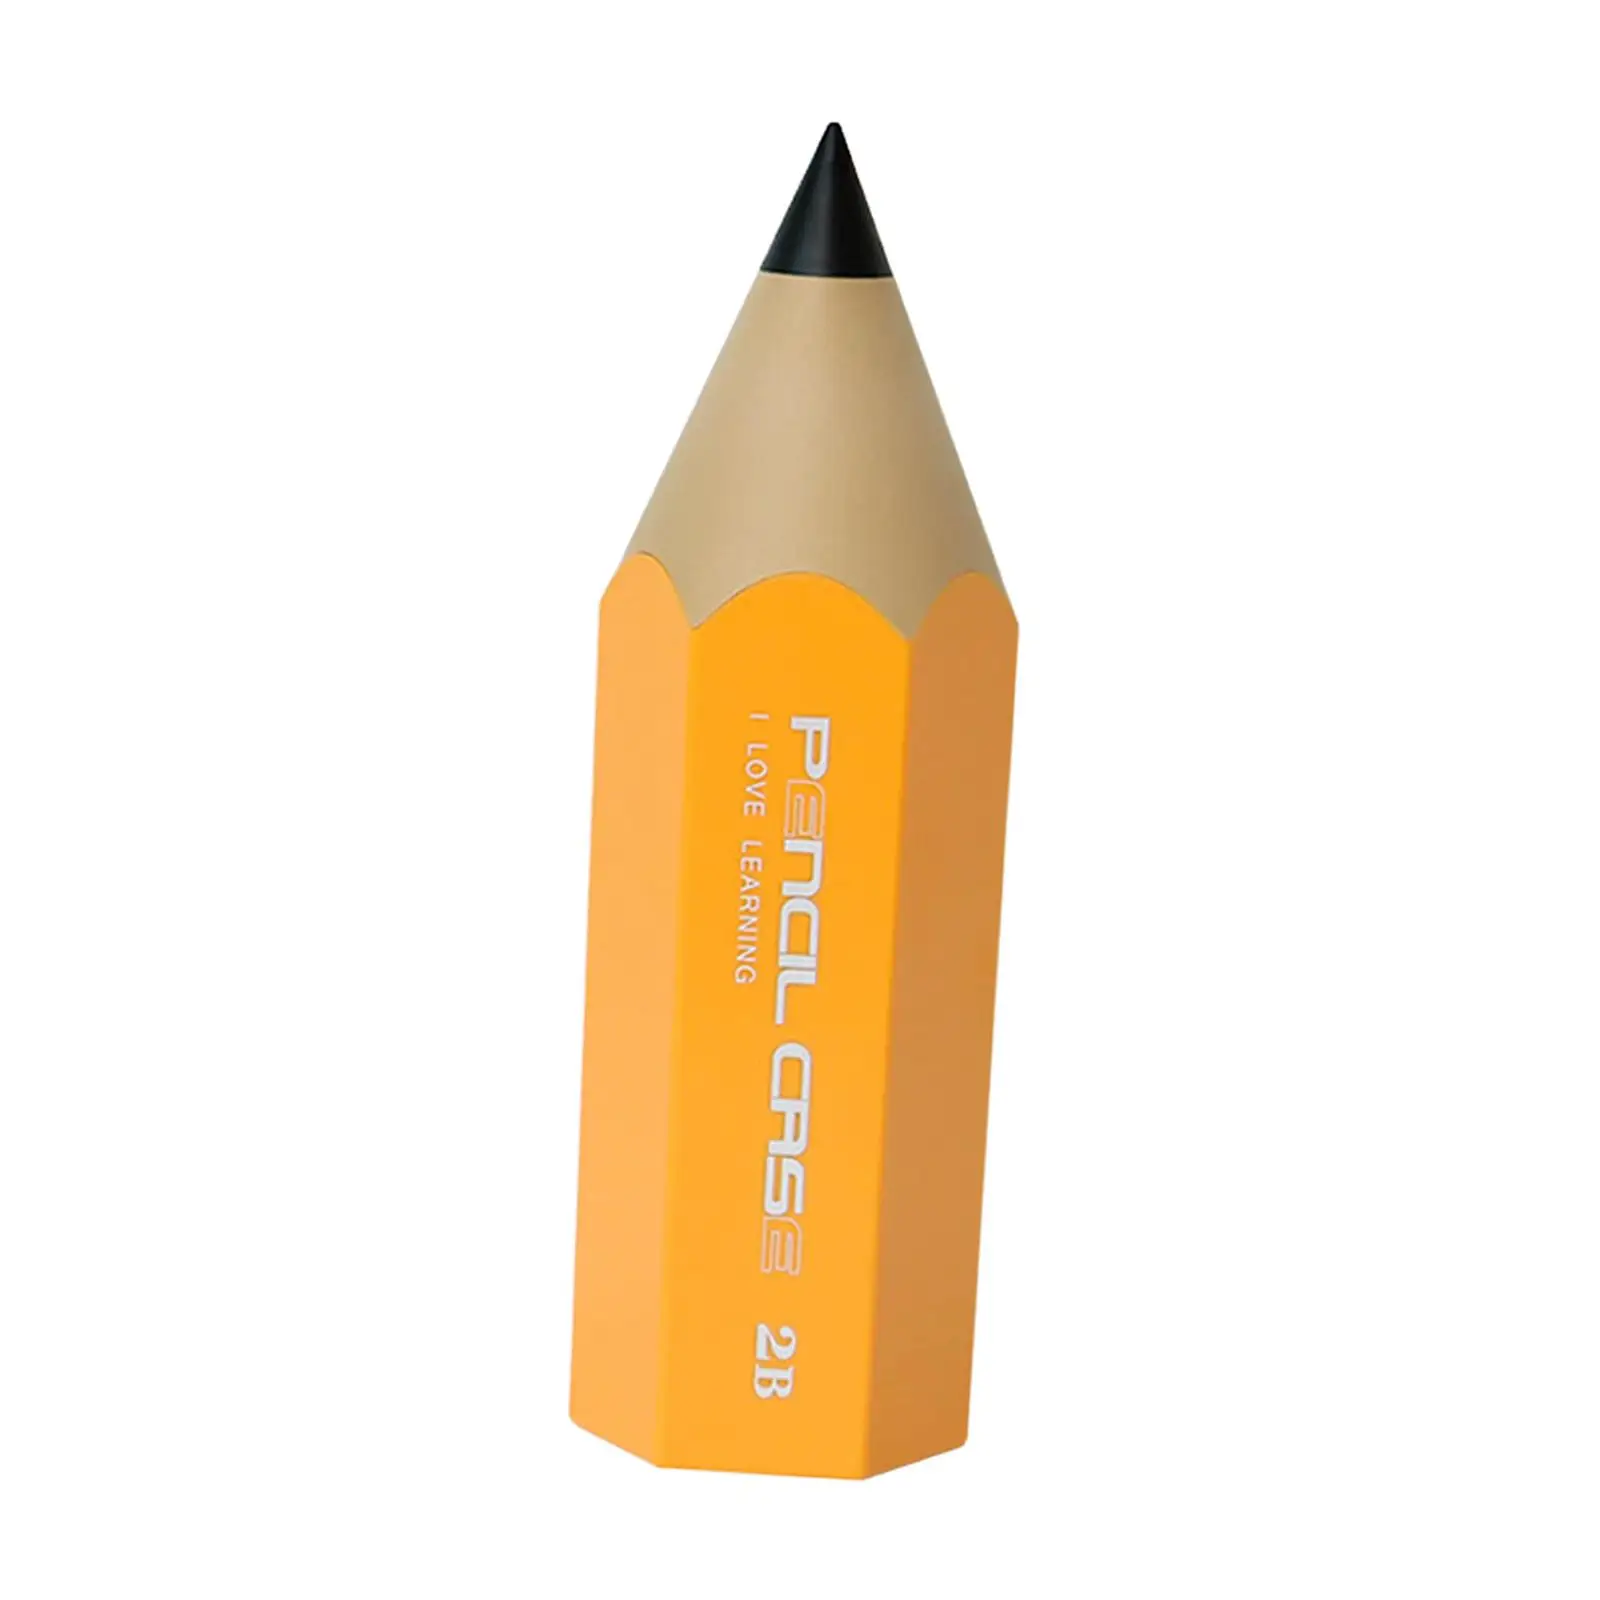 Pencil Shaped Pen Holder Cute Pen Organizer Desktop Organizer Case Desk Pen Holder for Desk Accessories Office Supplies Lipstick